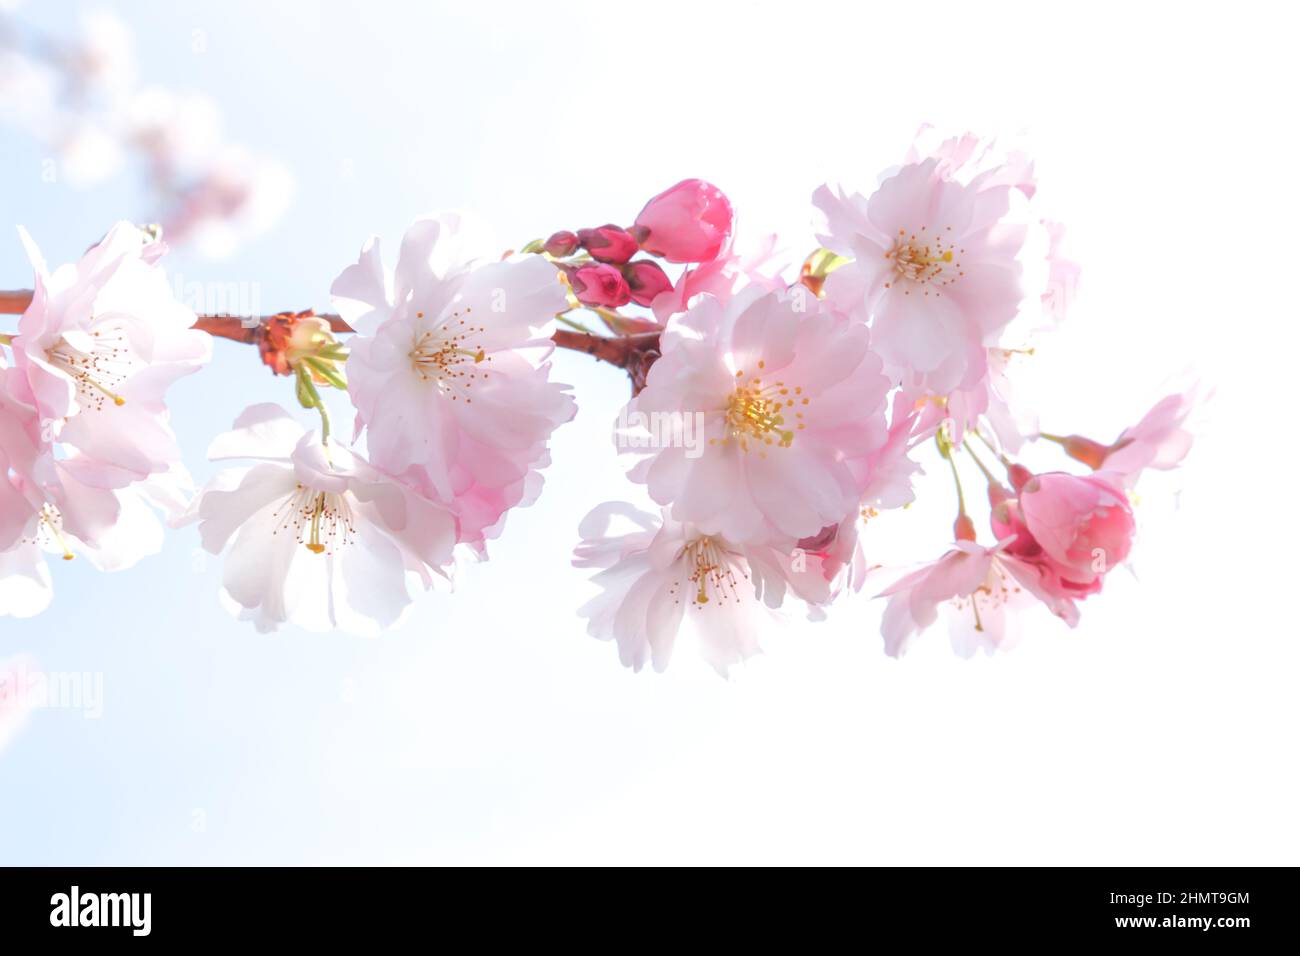 Deutschland; Blüten einer Zierkirsche Stock Photo